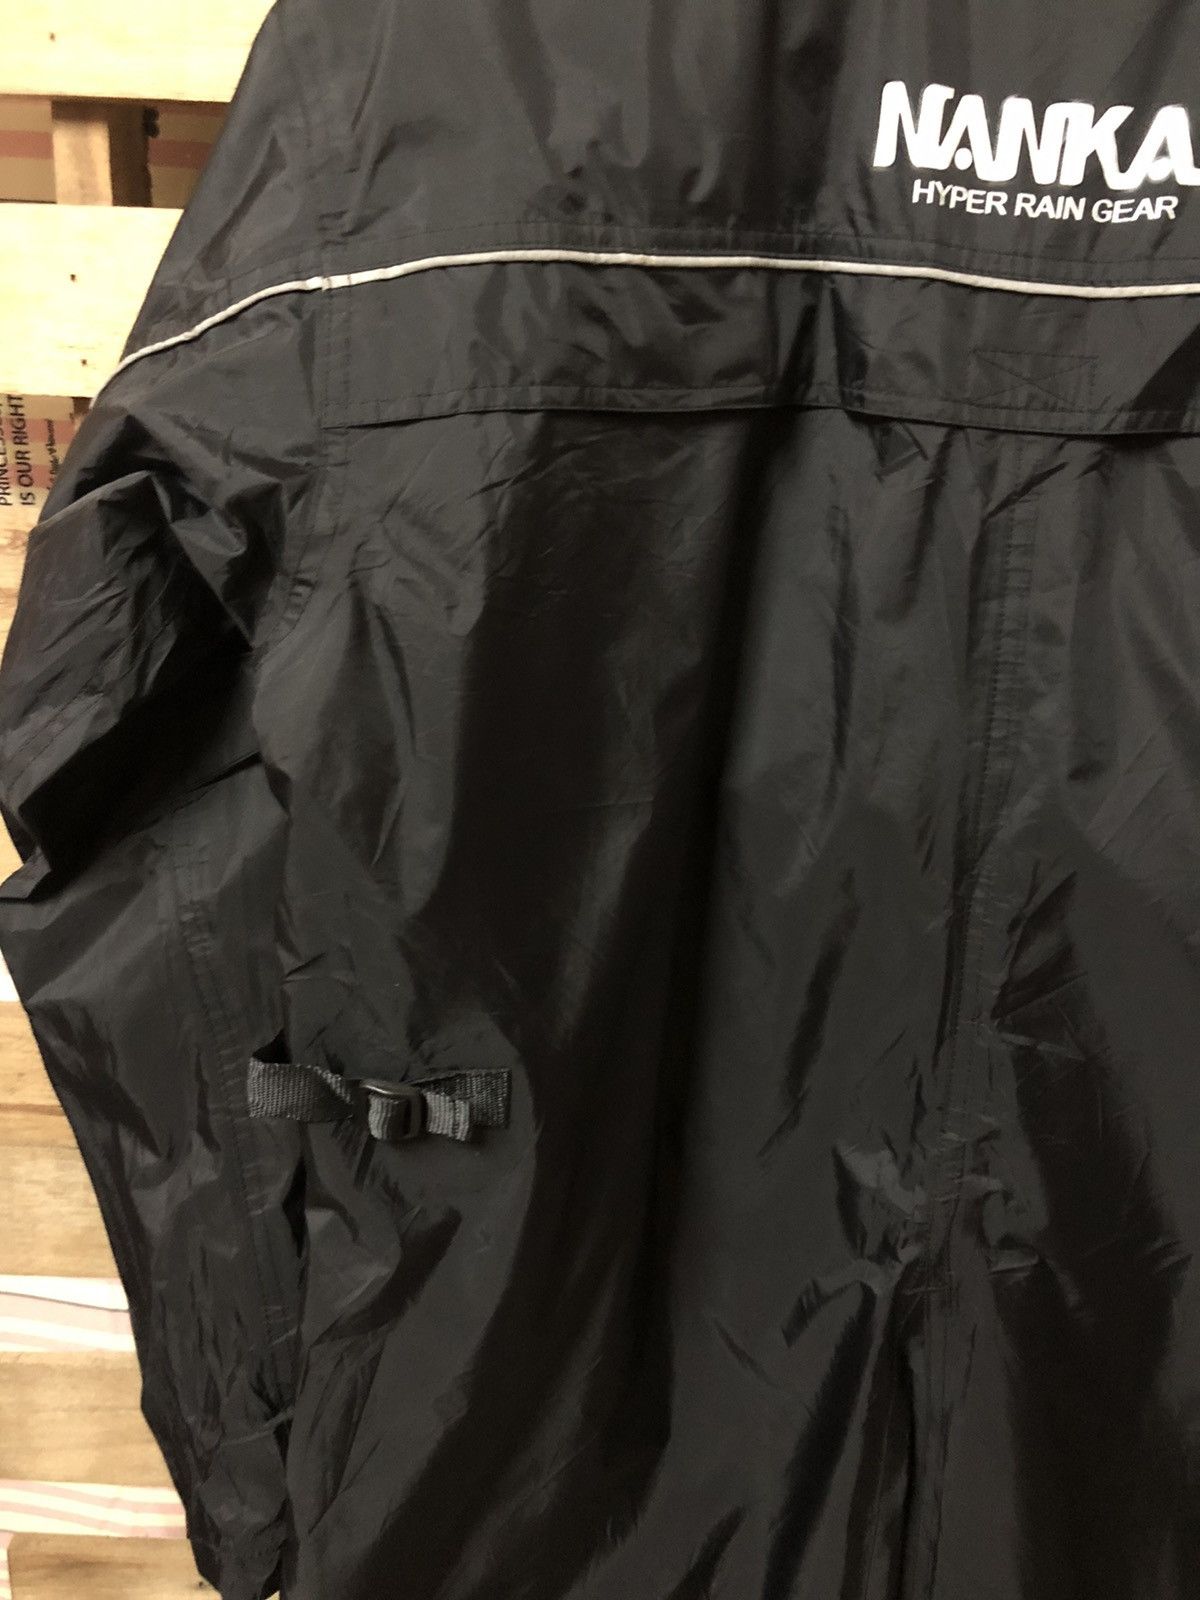 Sports Specialties - Nankai Motorcycle Hyper Rain Gear Long Jacket - 10